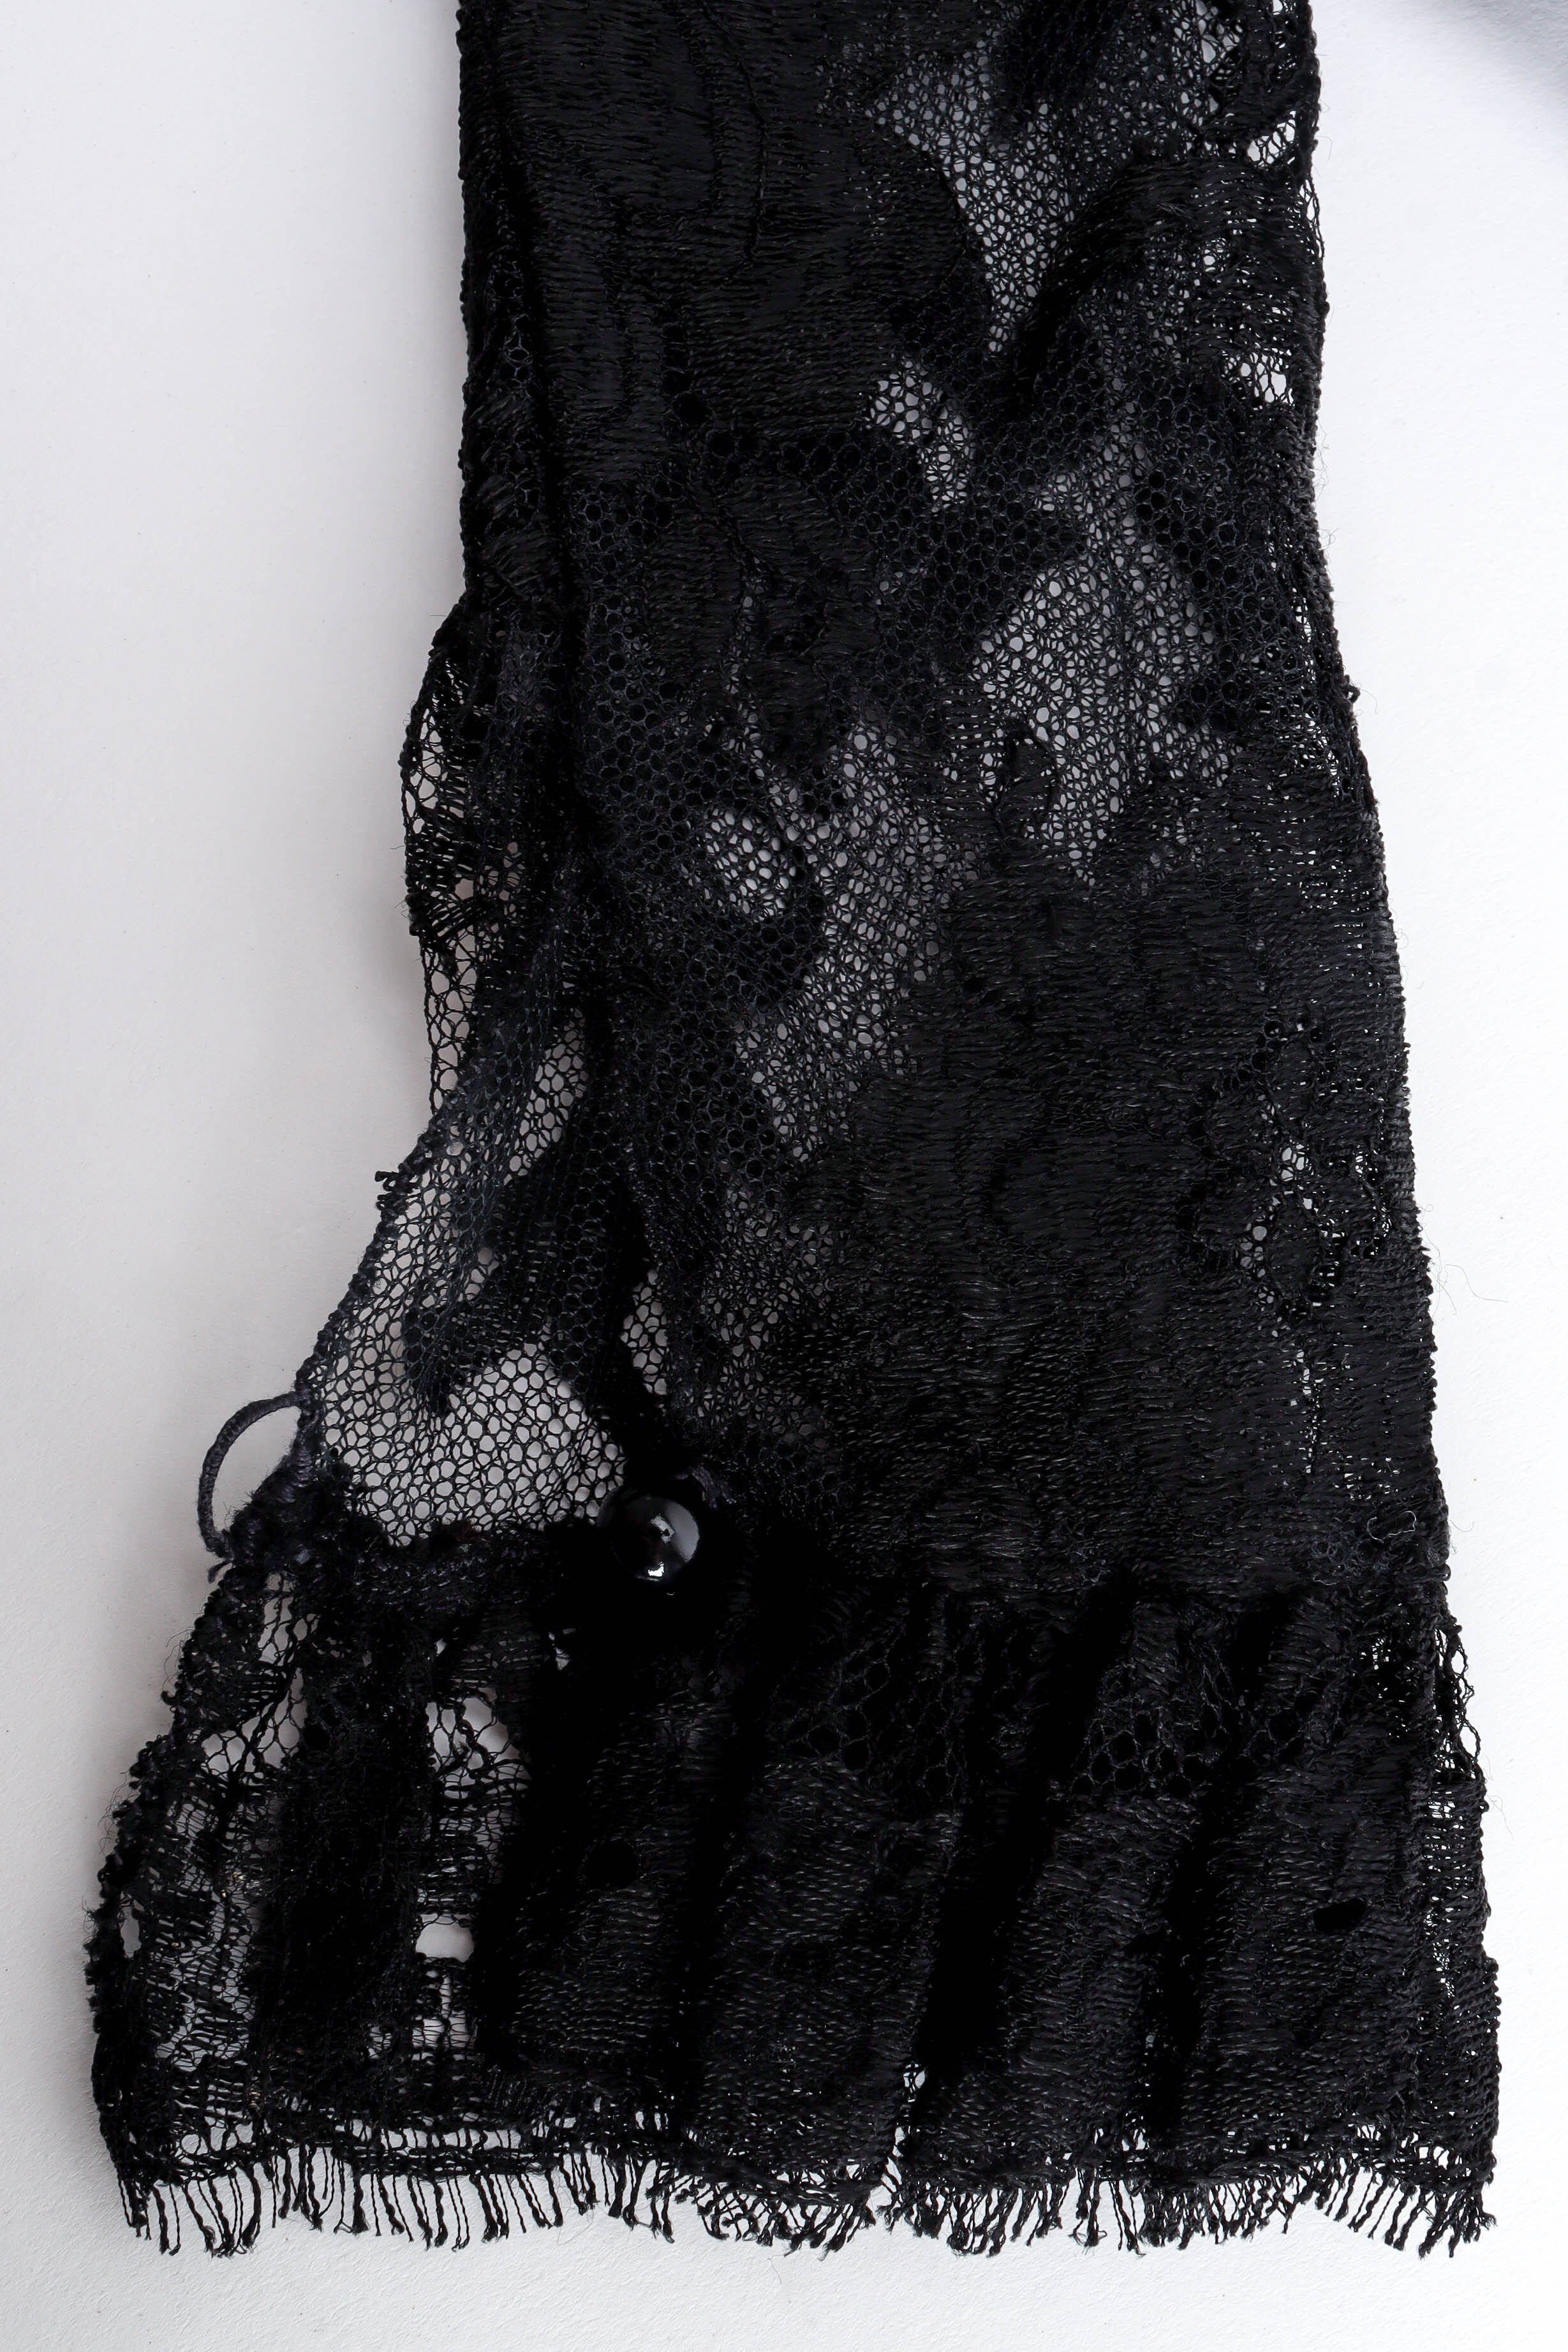 Vintage Emanuel Ungaro Bow Sheer Lace Dress lace cuff detail @ Recess LA